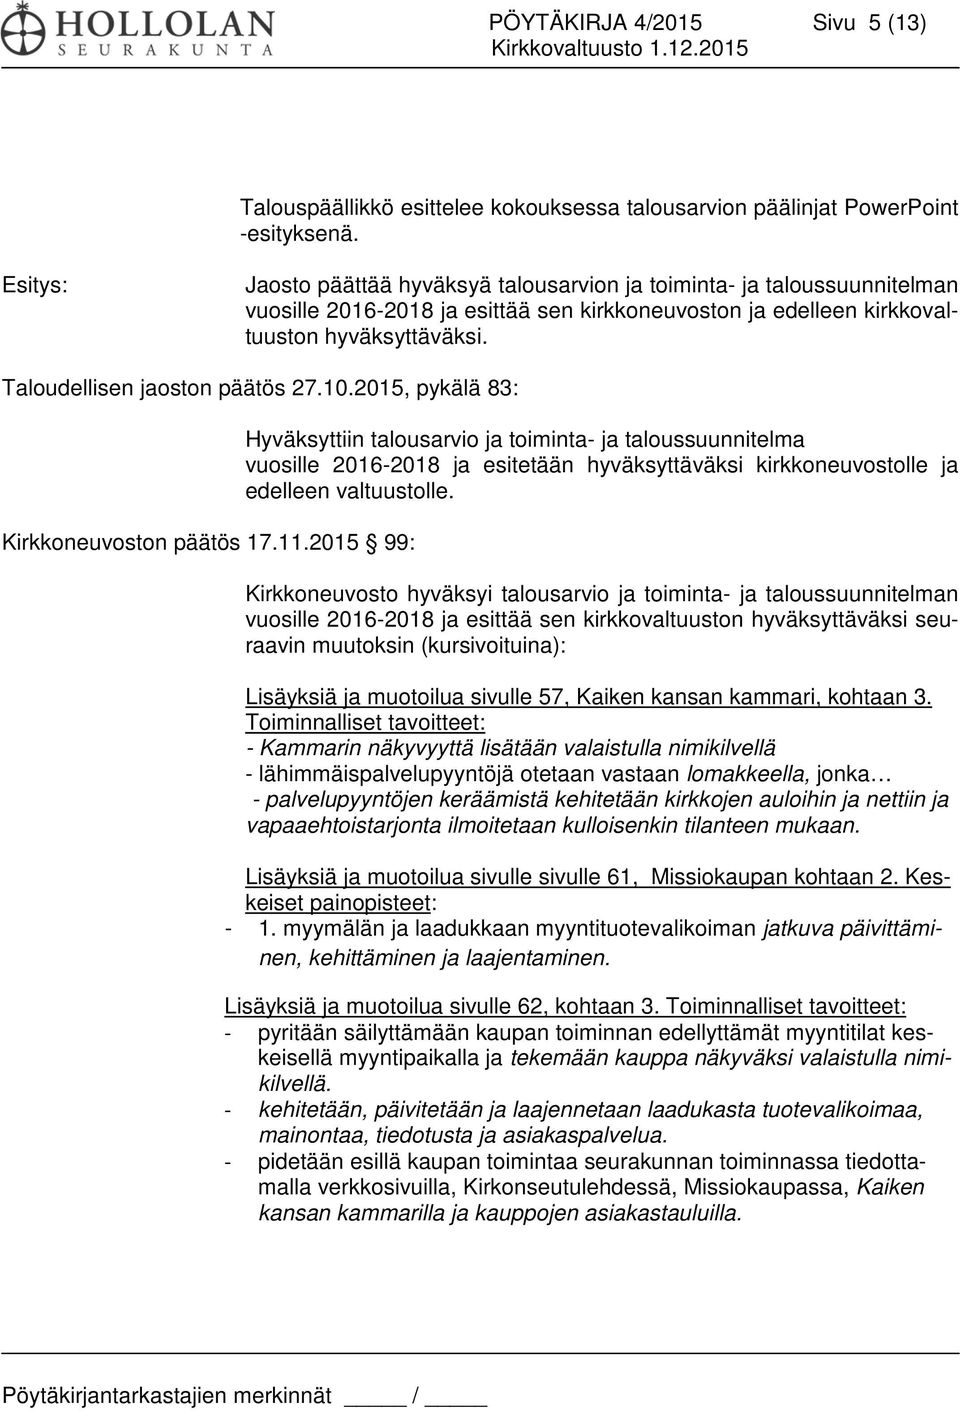 Taloudellisen jaoston päätös 27.10.2015, pykälä 83: Kirkkoneuvoston päätös 17.11.